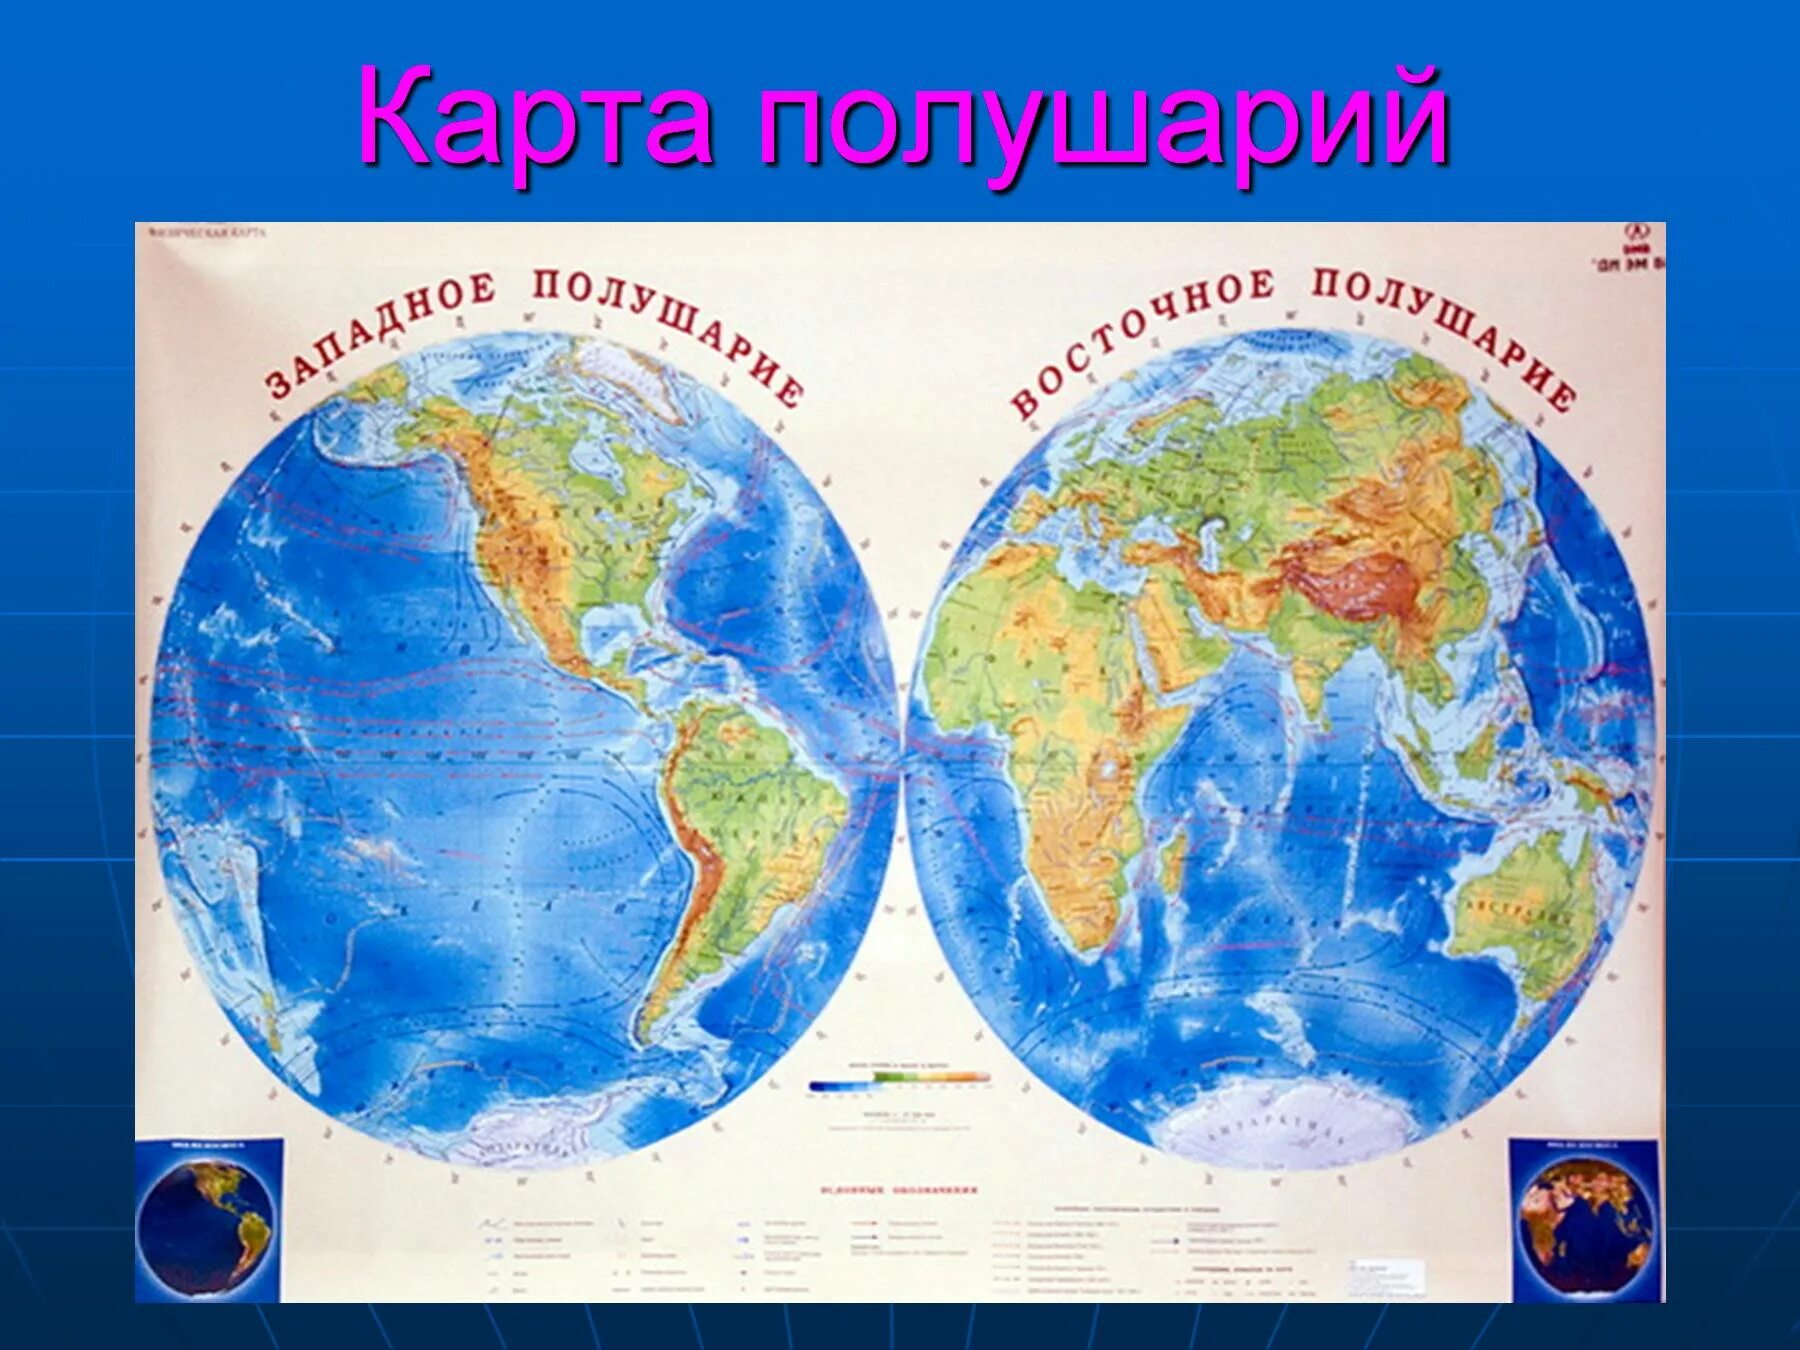 Евразия в восточном полушарии. Карта полушарий. Карта полушарий земли. Физическая карта полушарий. Карта двух полушарий.